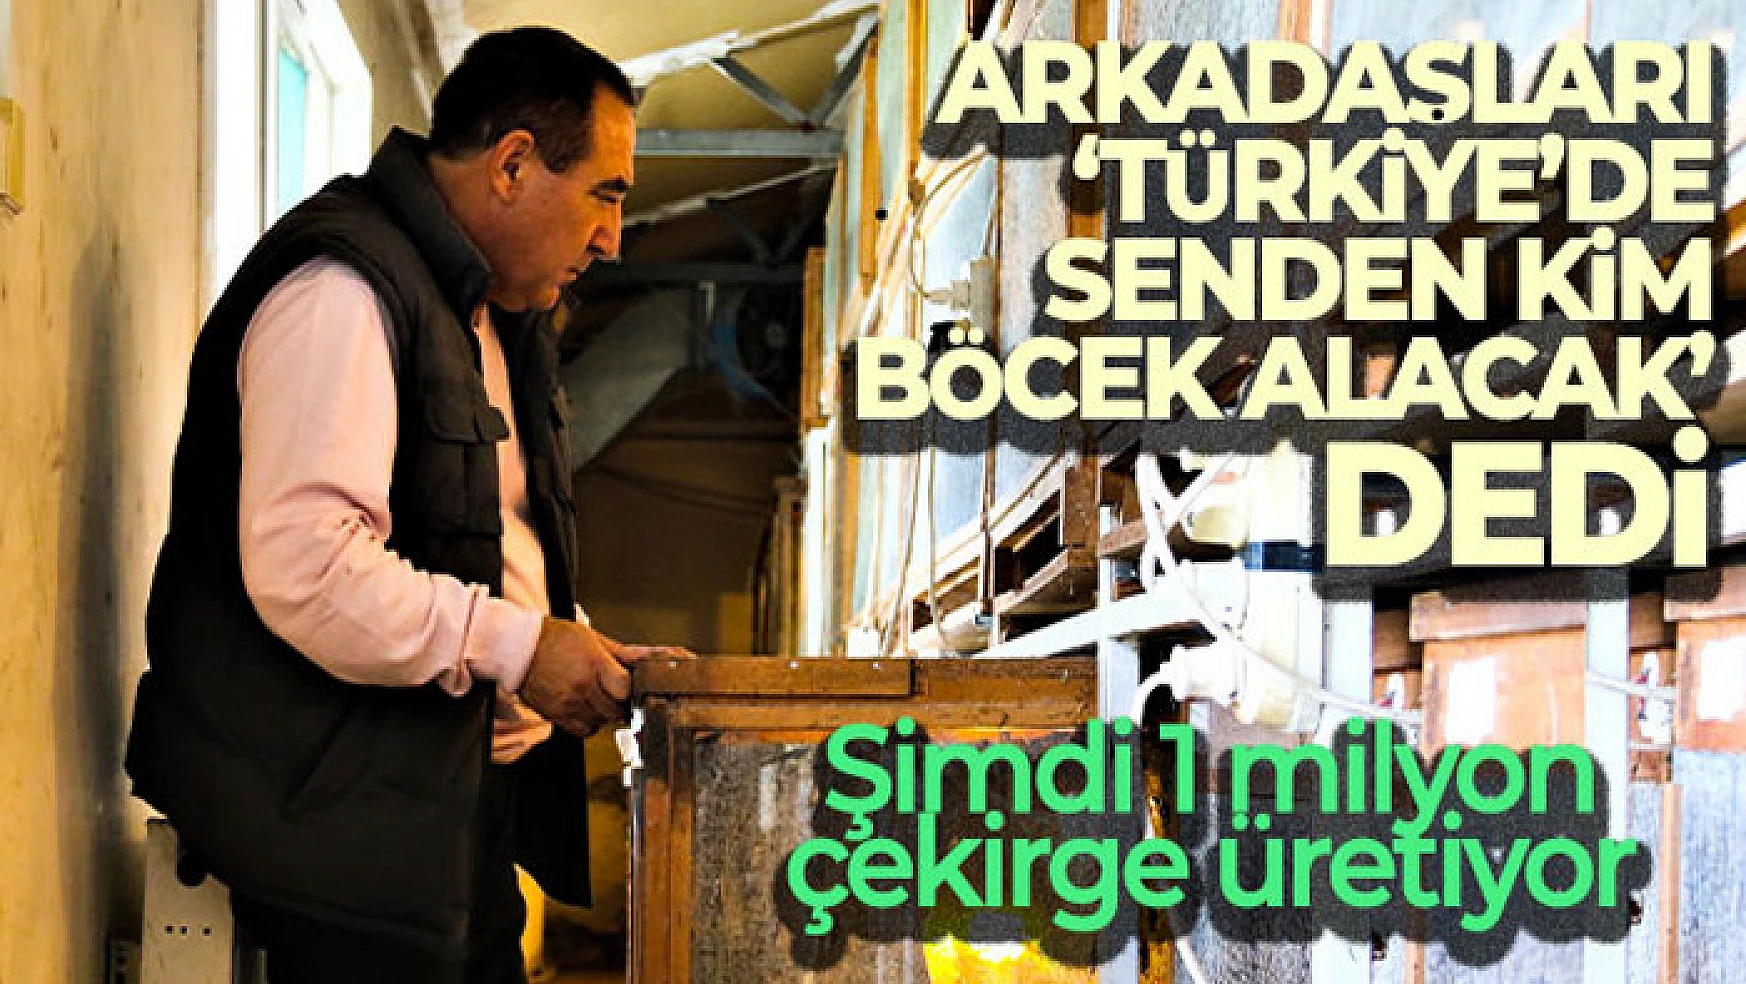 Arkadaşlarının 'Türkiye'de senden kim böcek alacak' dediği işletmeci 1 milyon çekirge üretiyor